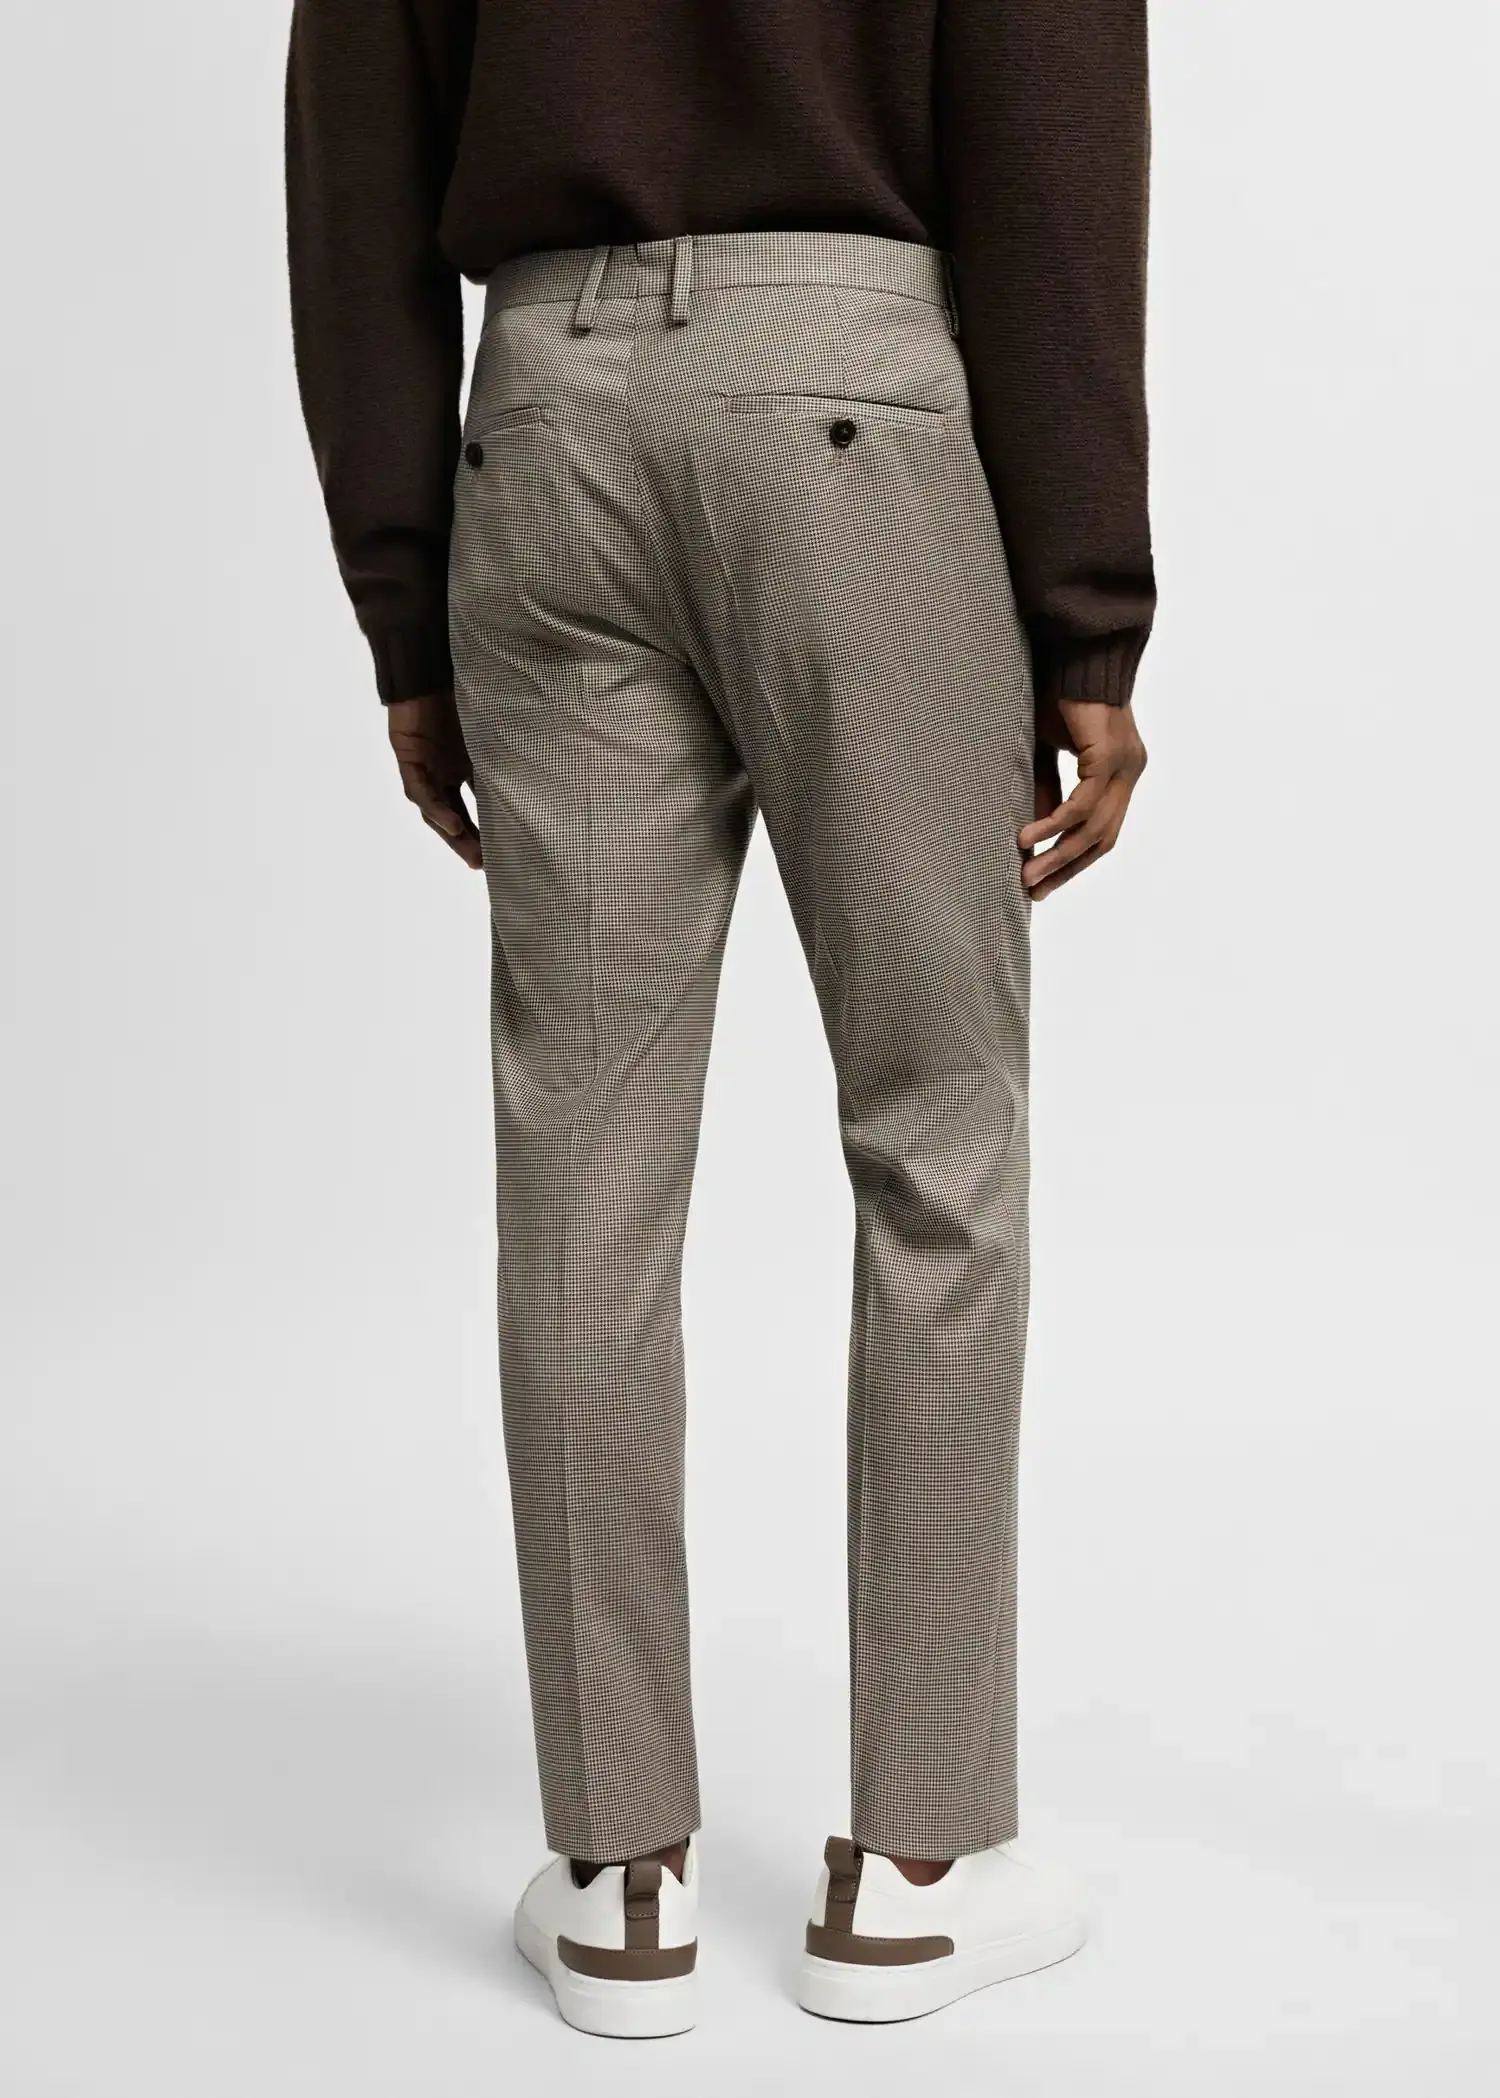 Mango Stretch fabric super slim-fit suit pants. 3